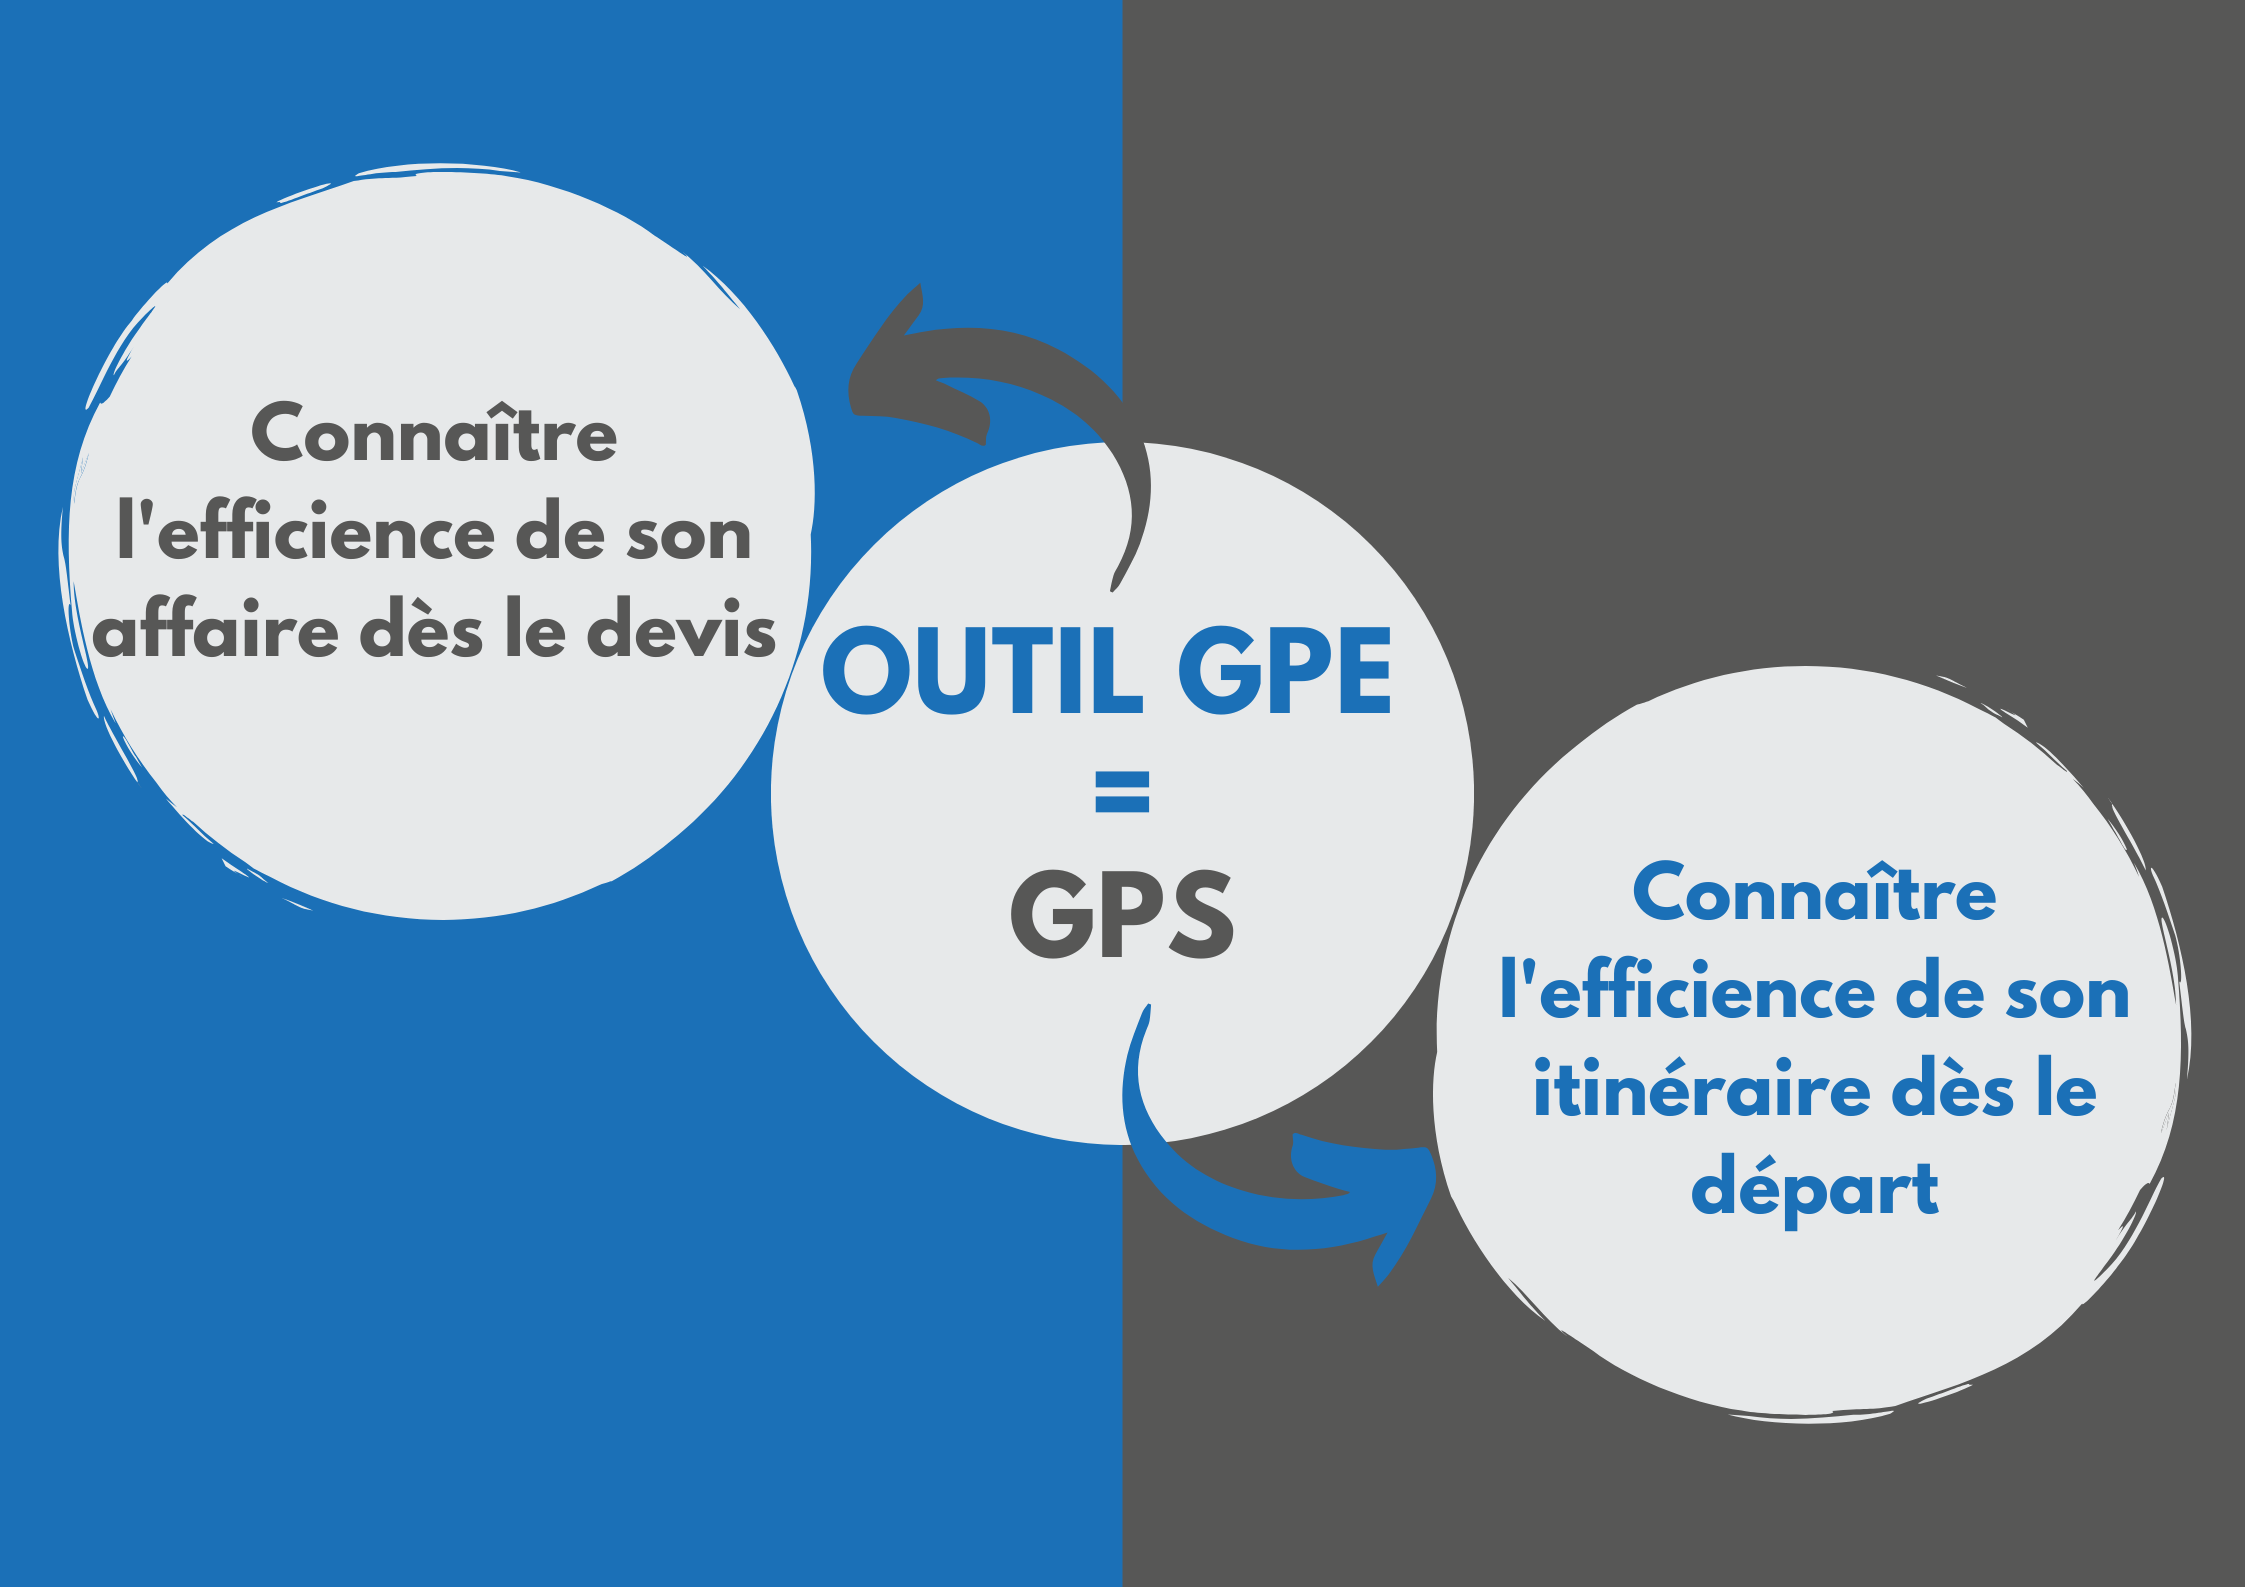 Le GPE permet de connaître son efficience dès le devis comme le GPS, il permet de connaître l’efficience de son itinéraire avant le départ.